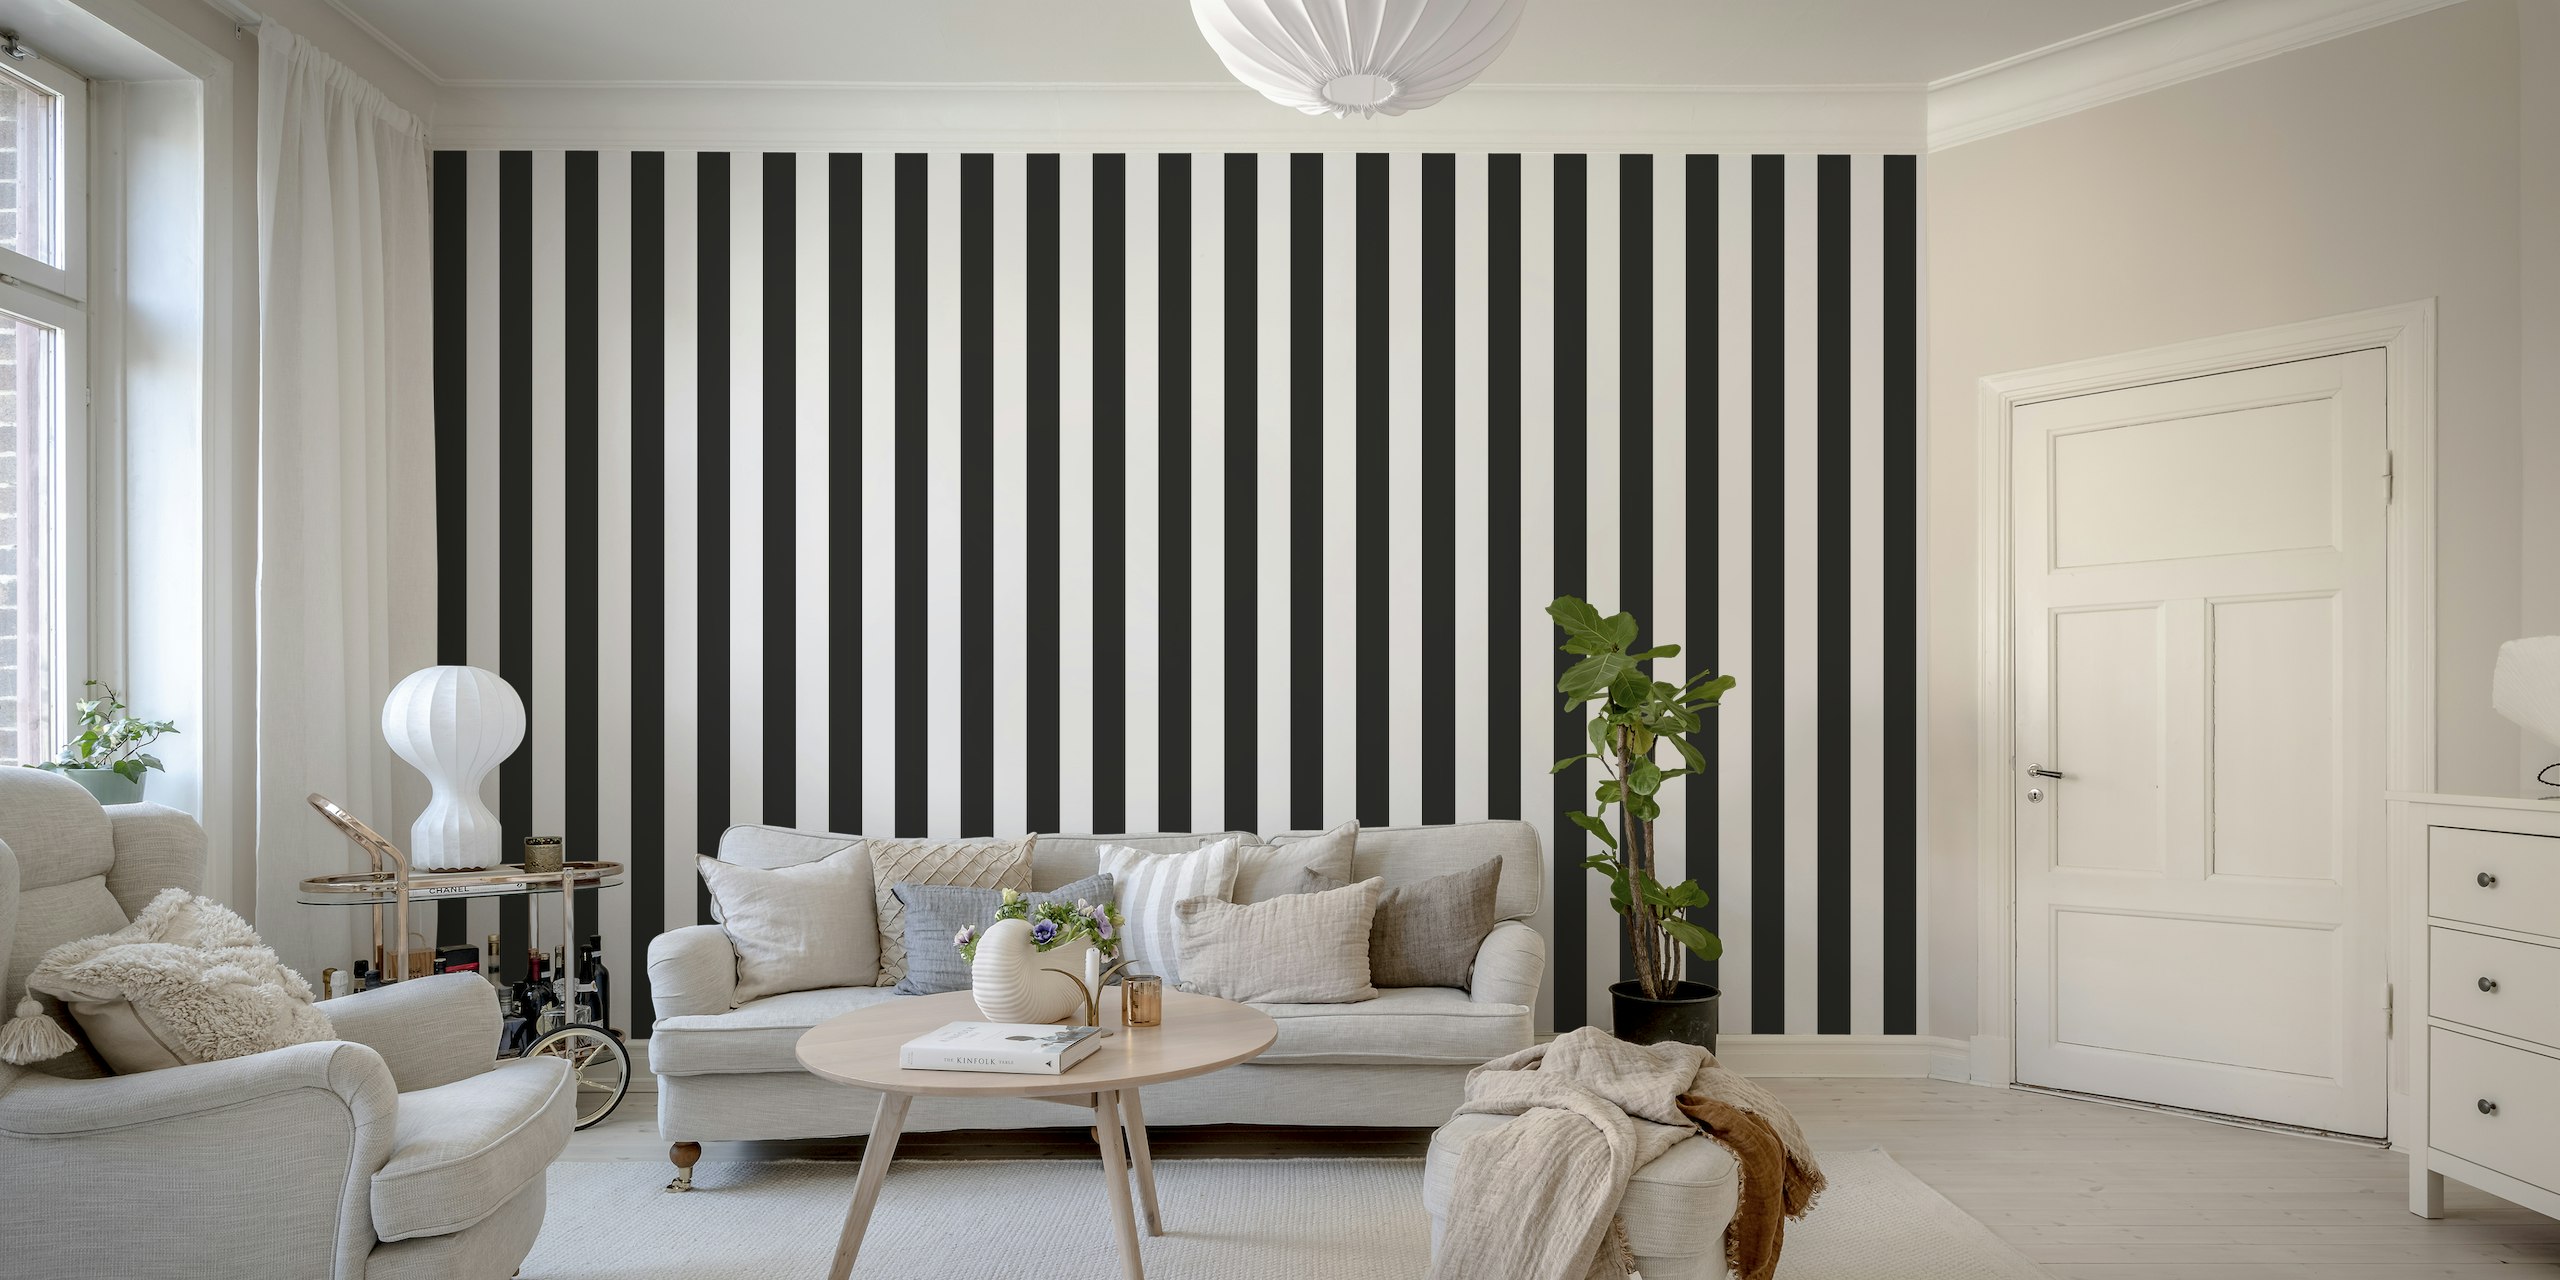 Black and white stripe pattern papel pintado